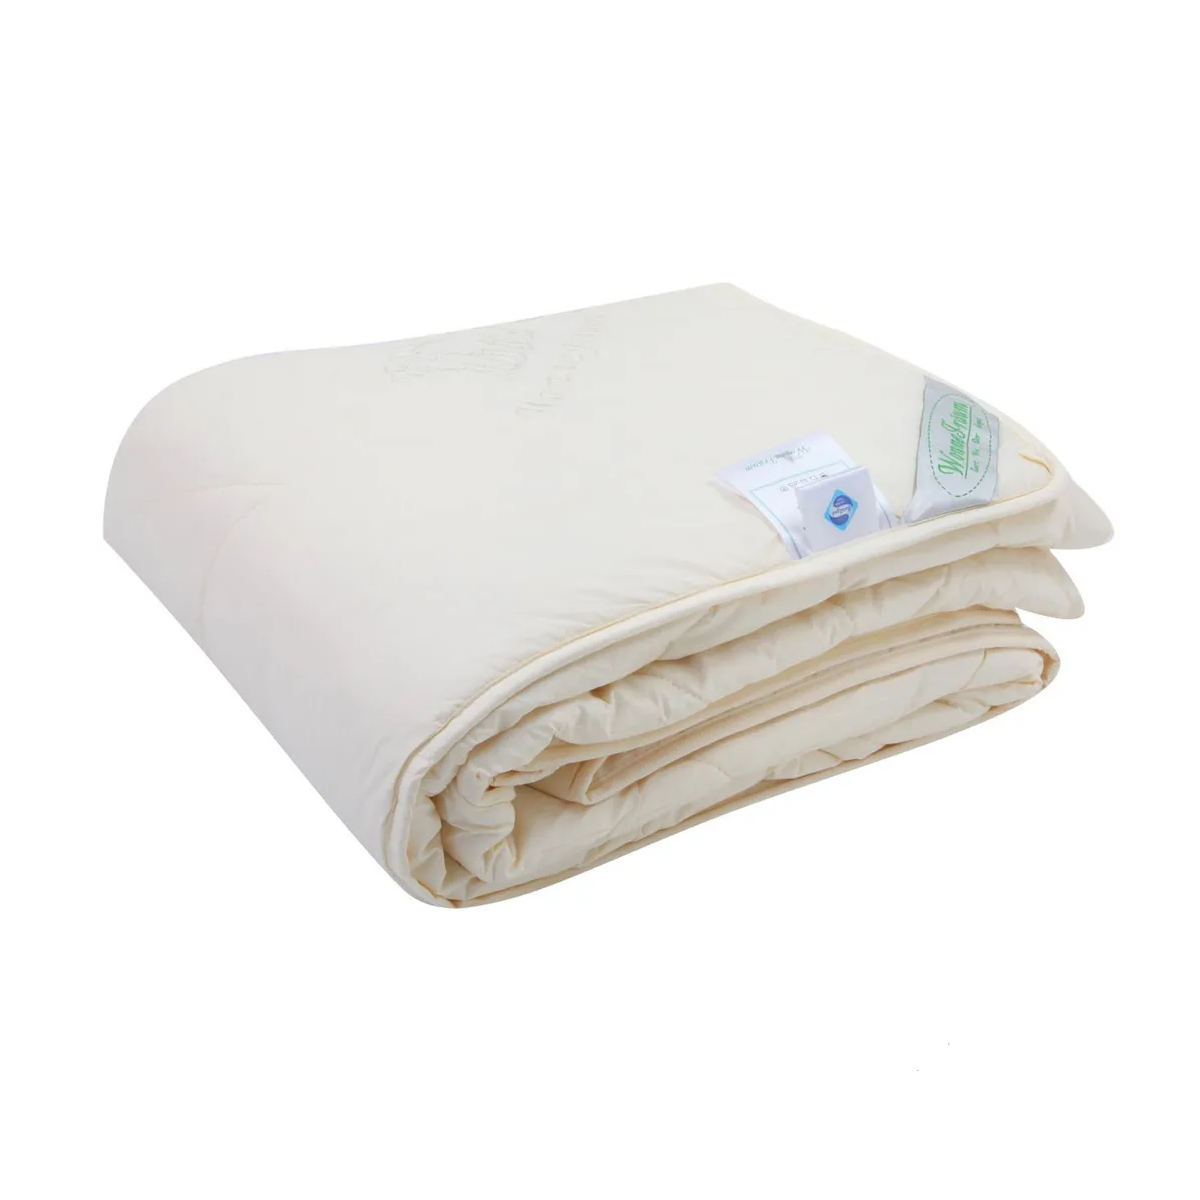 Одеяло шерстяное Wonne Traum кремовое 200х220 см (2709-26245) одеяло дачное облегченное кремовый р 200х220